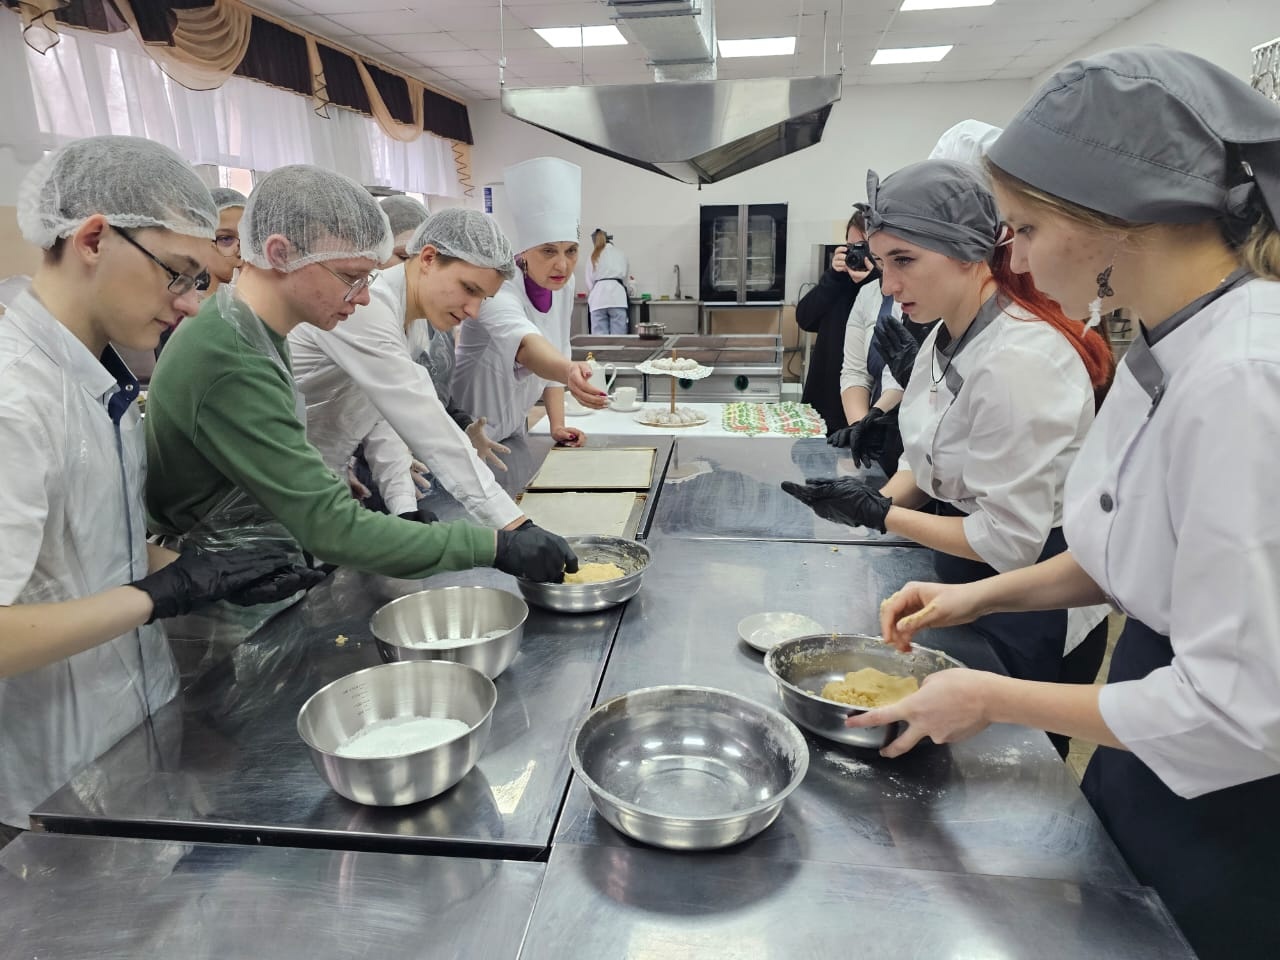 Обучающиеся МБОУ СОШ № 20 в рамках профориентации посетили мастер-класс по приготовлению печенья